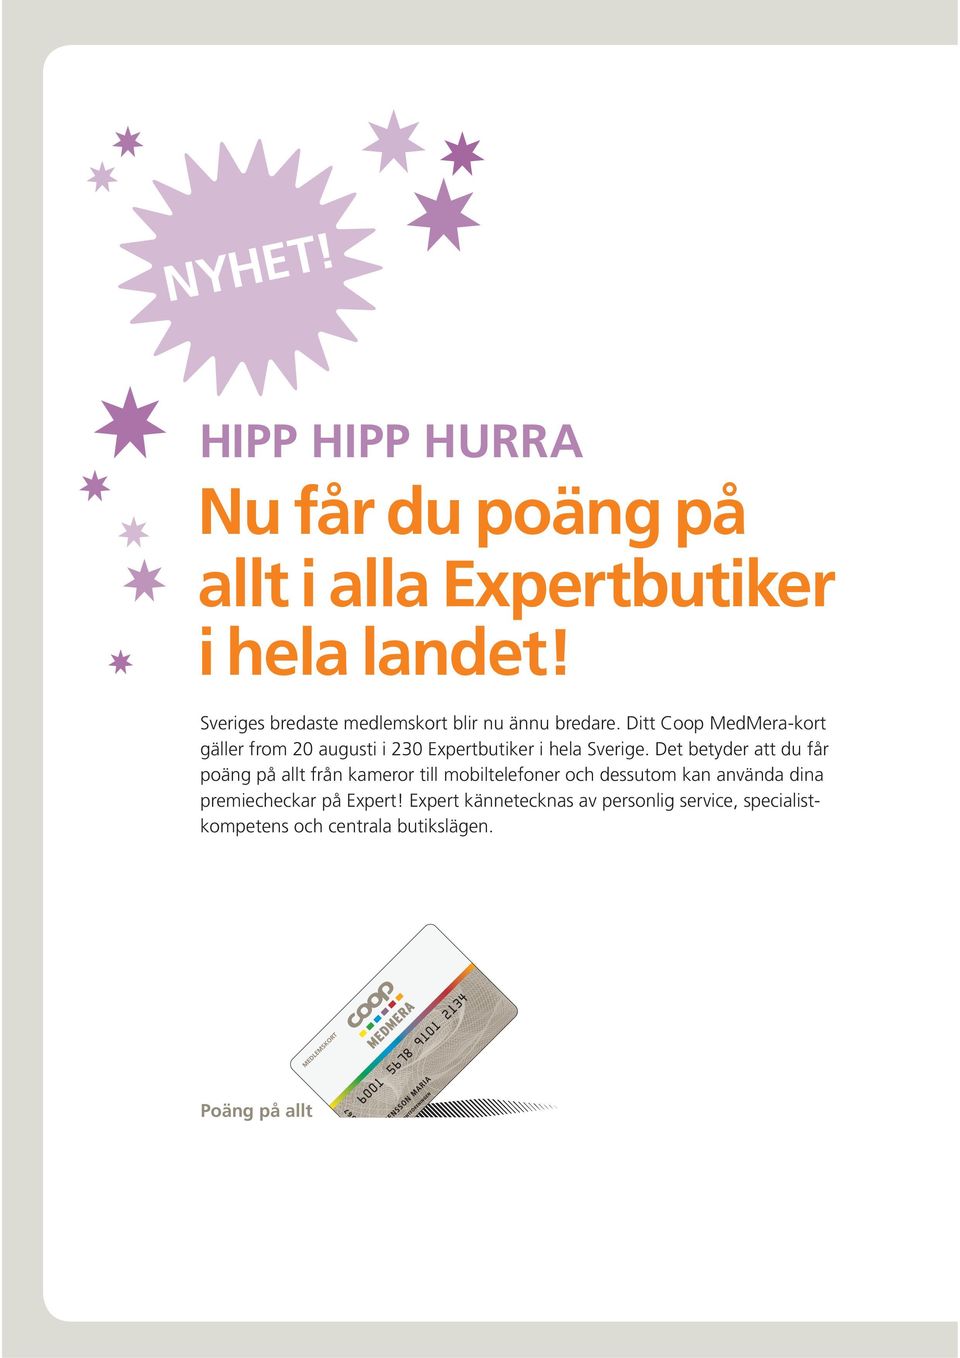 Ditt Coop MedMera-kort gäller from 20 augusti i 230 Expertbutiker i hela Sverige.